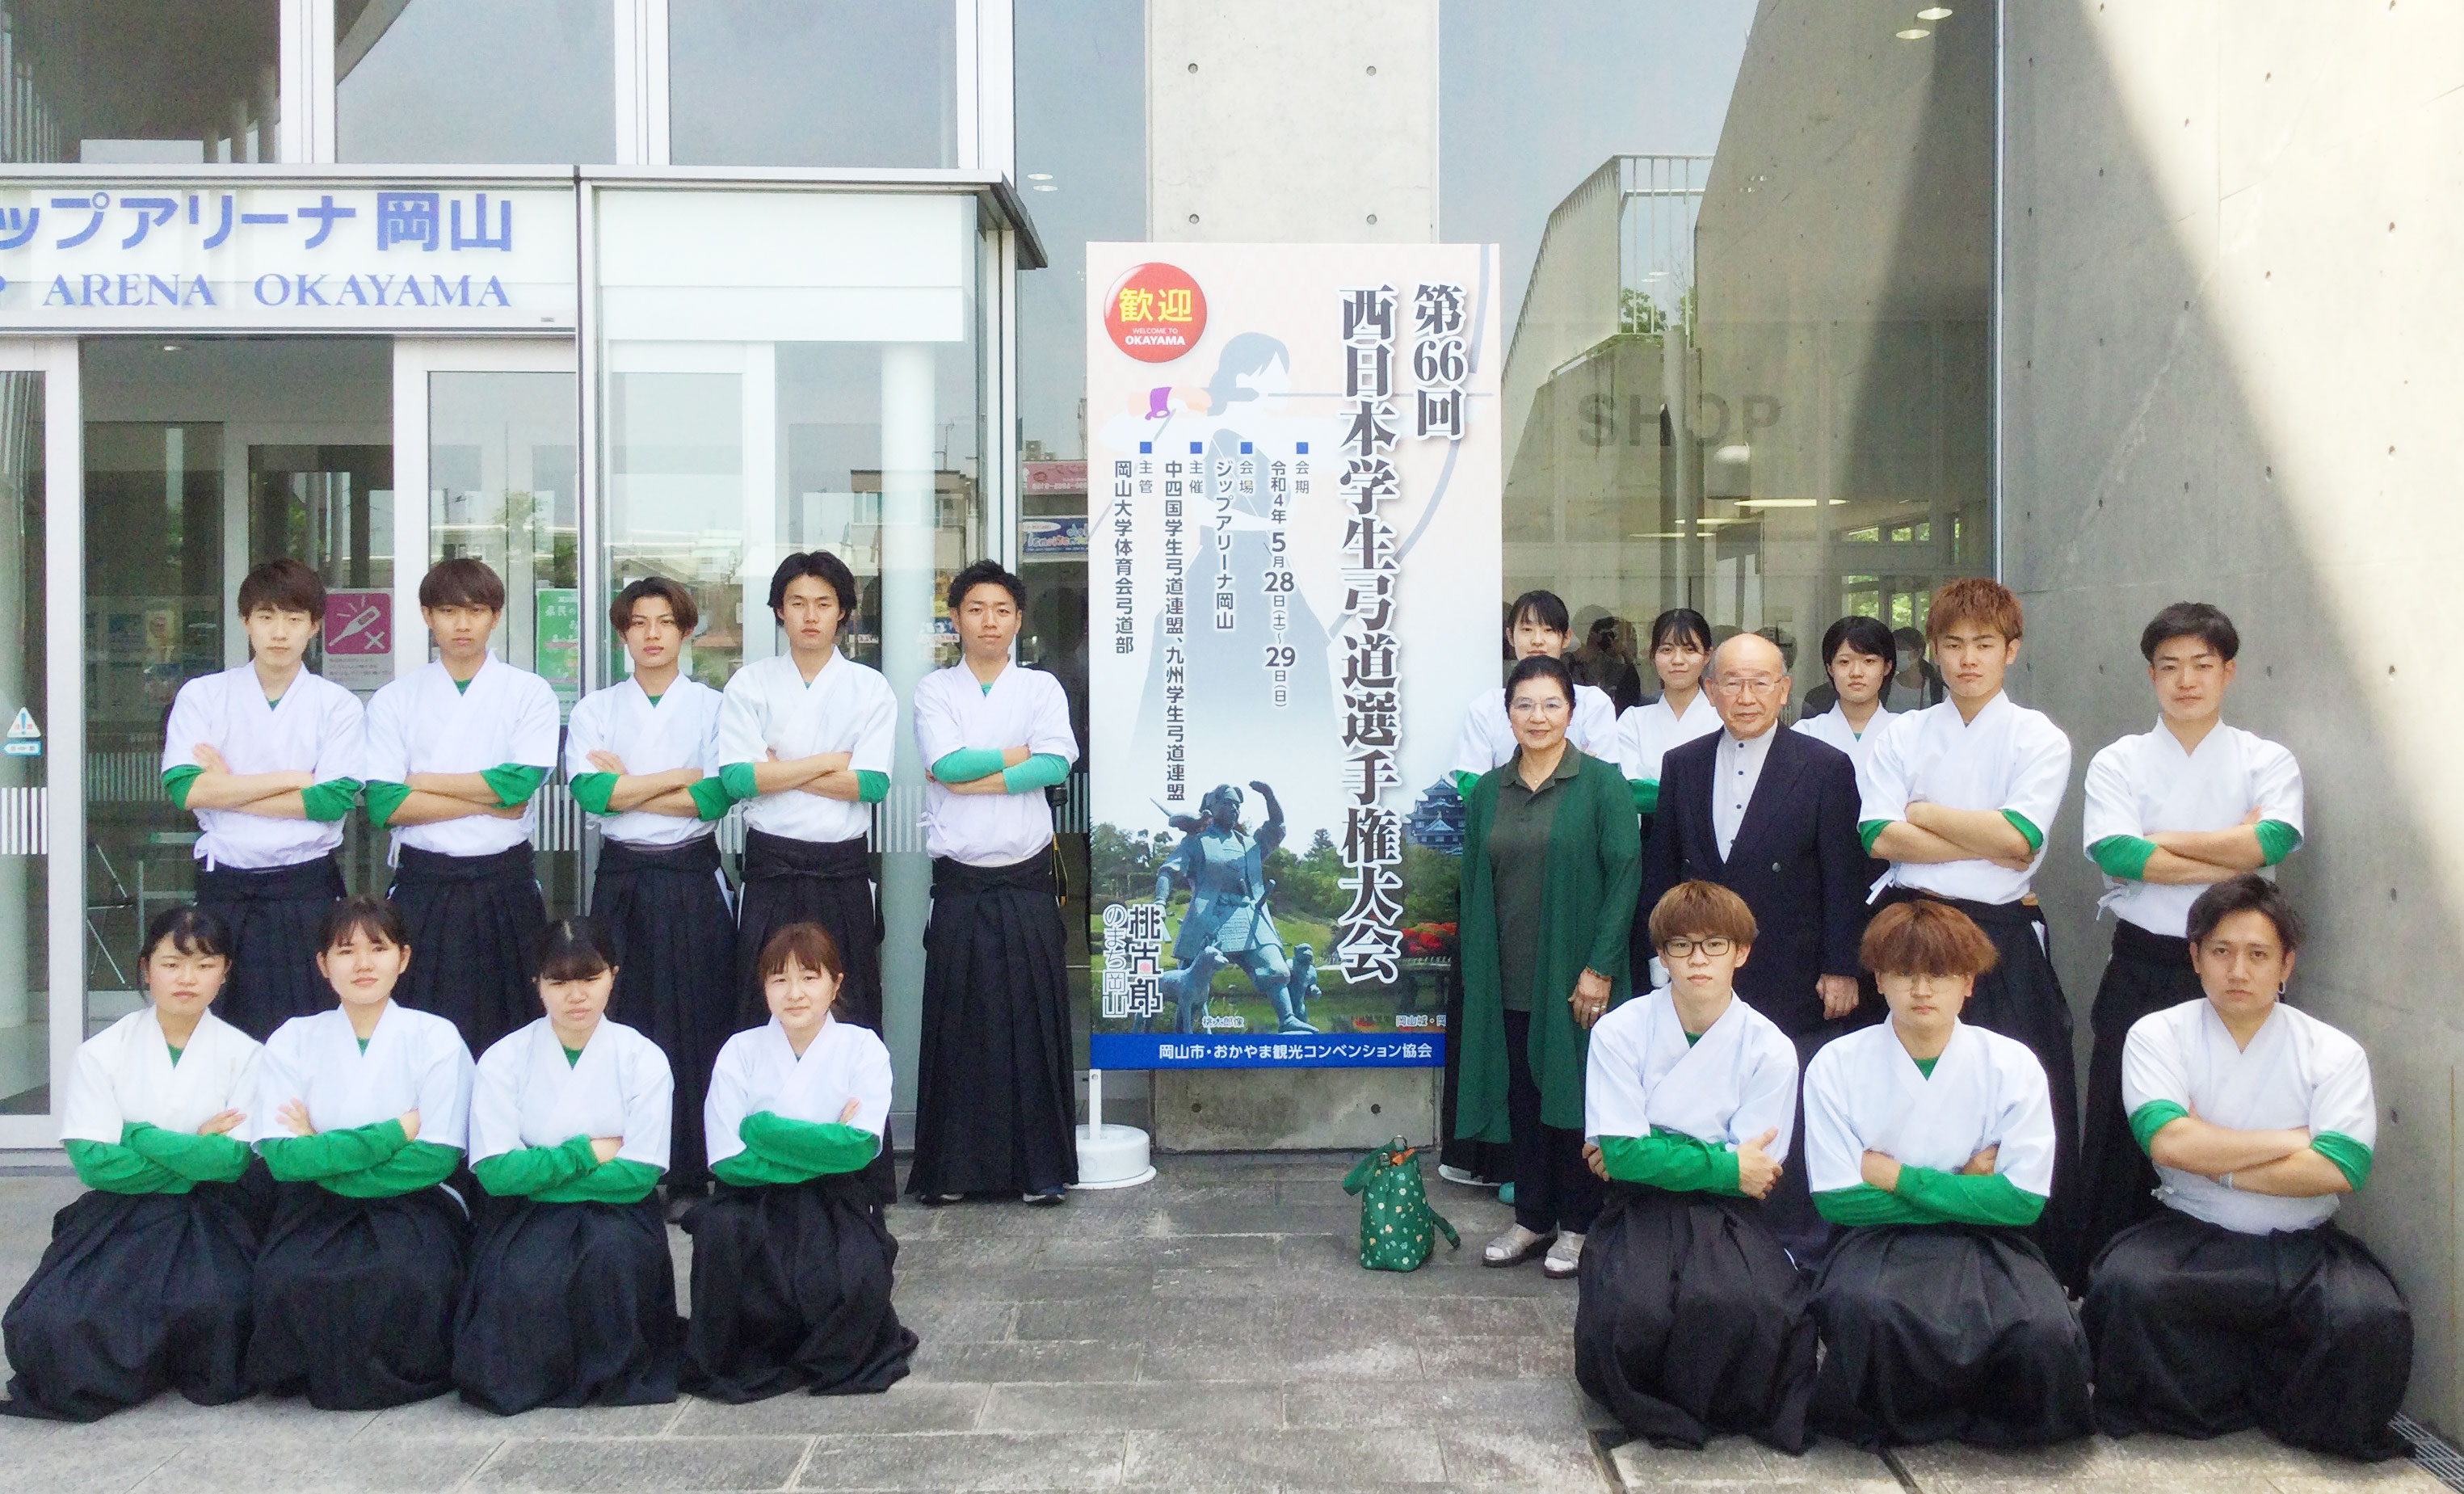 西日本学生弓道選手権 岡山ジップアリーナにてにて記念撮影